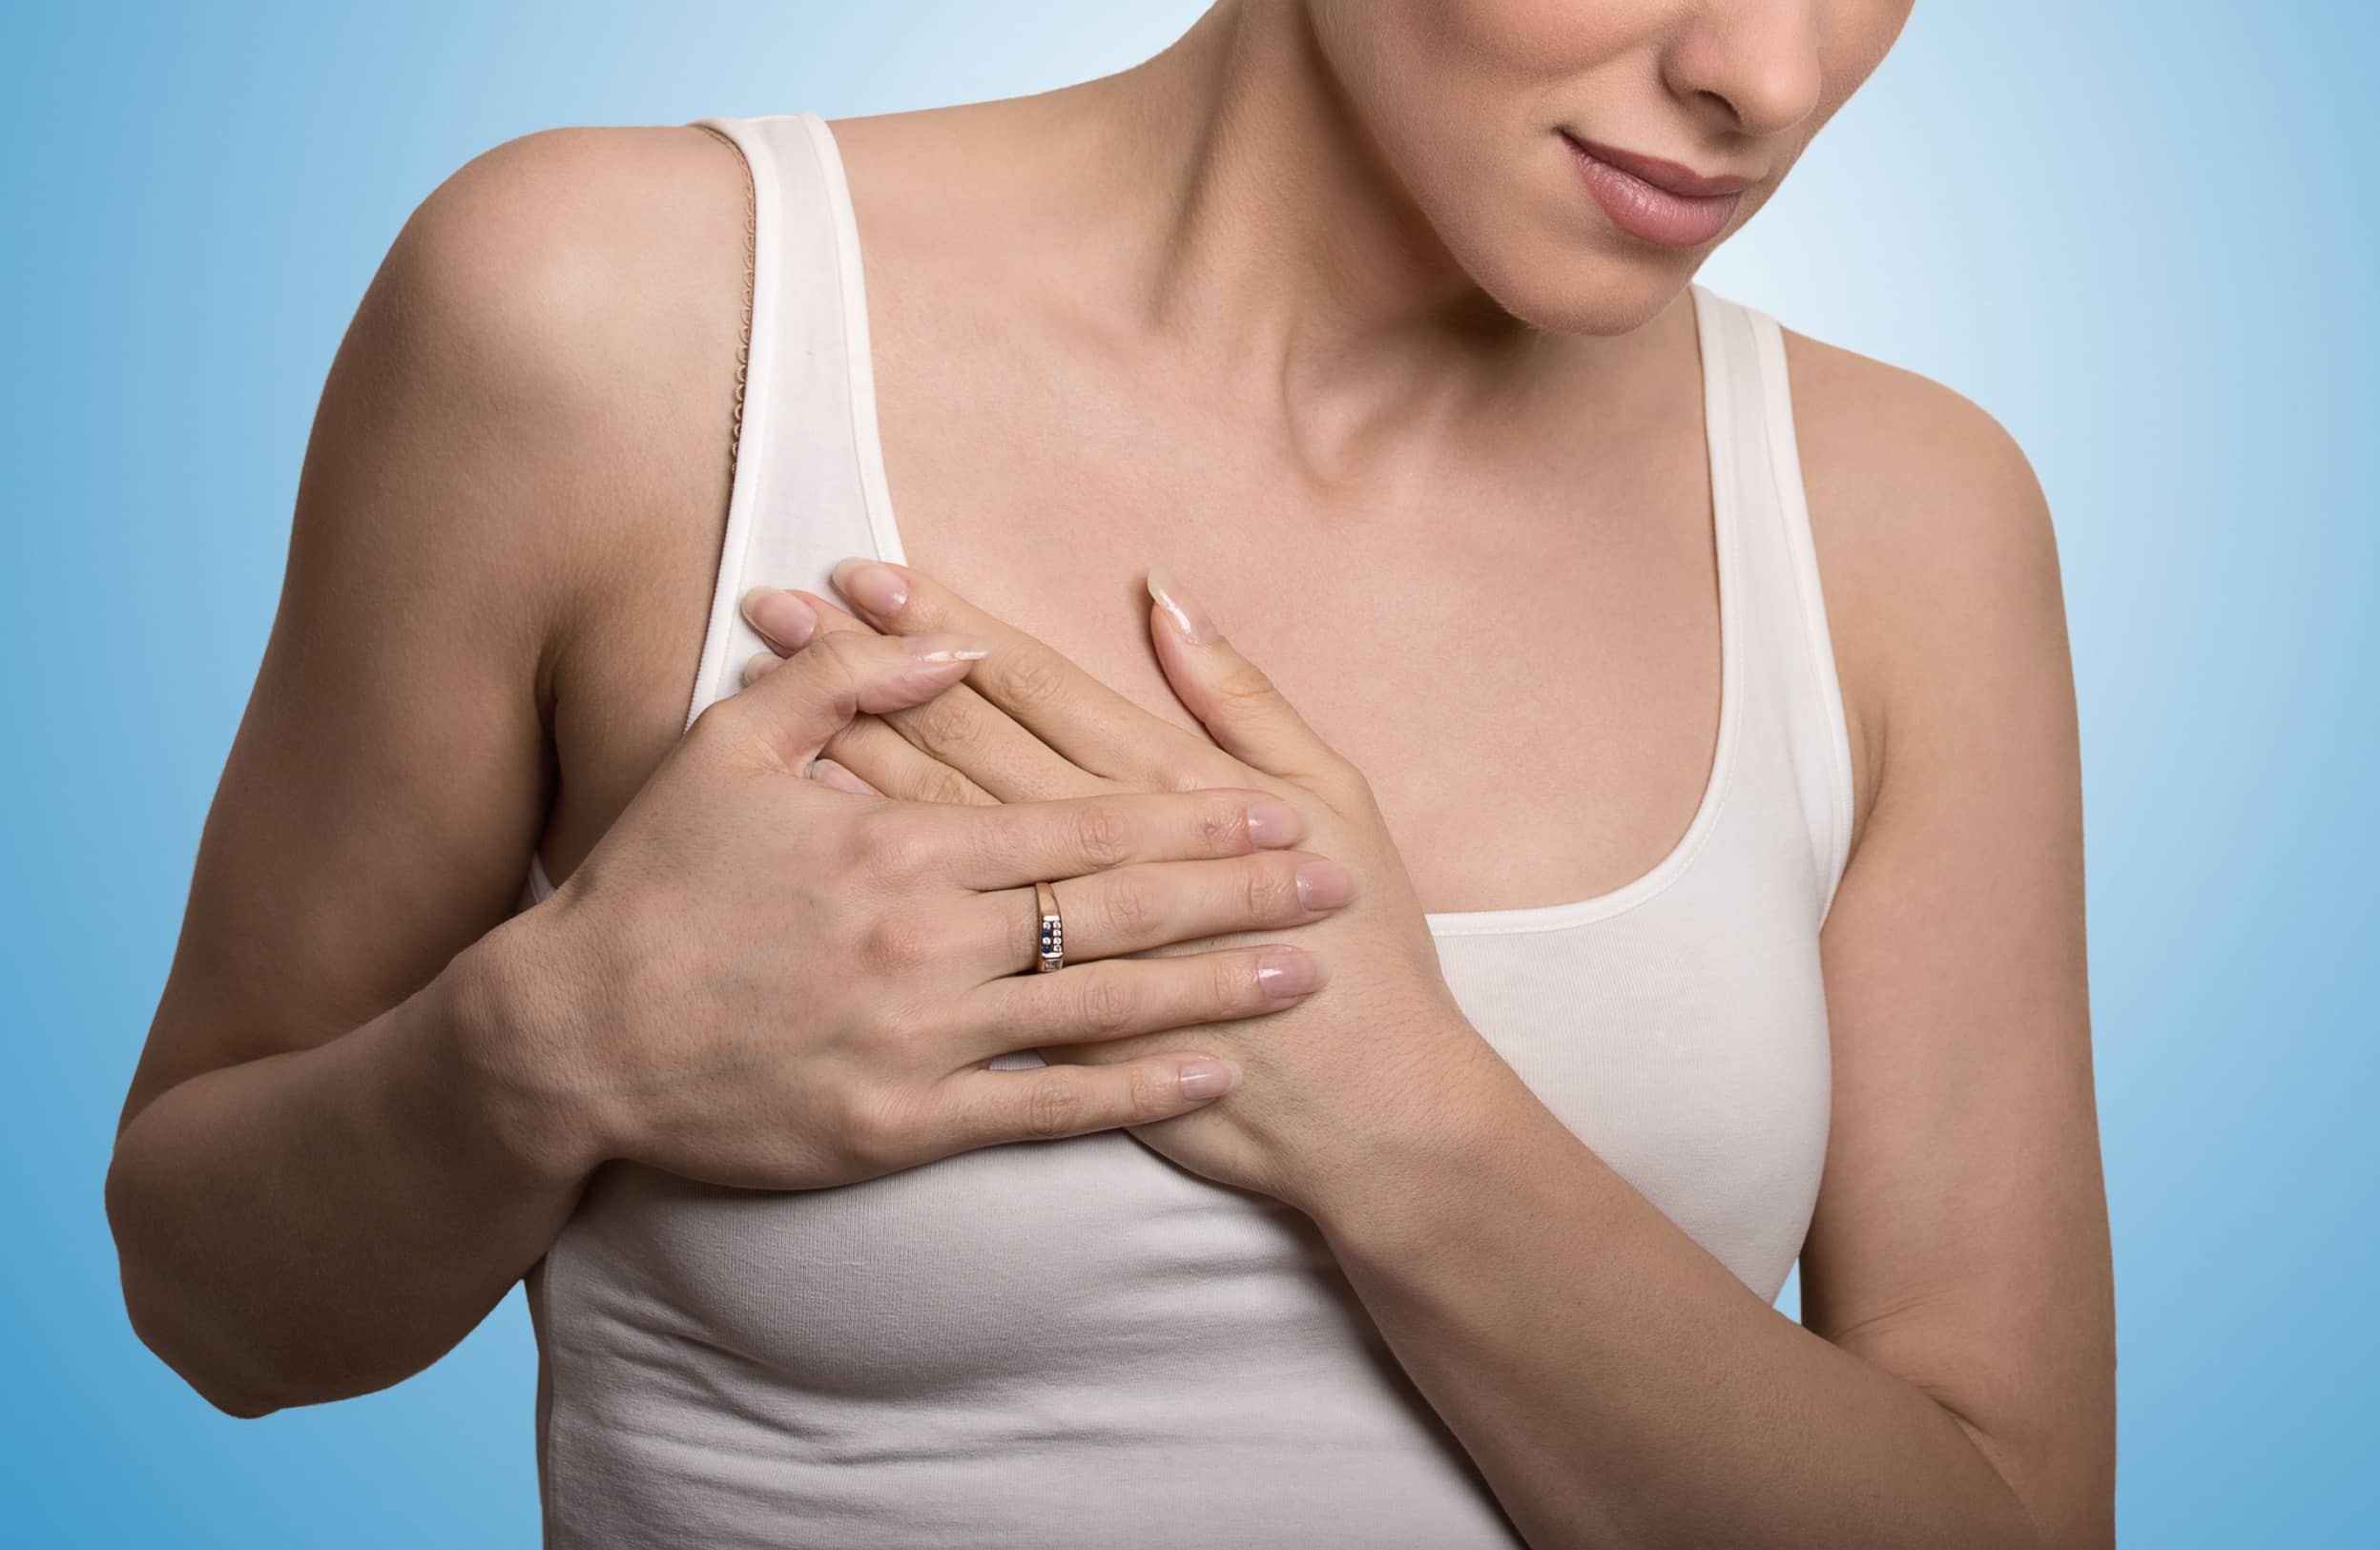 Absceso mamario: ¿Qué es y cómo tratarlo?